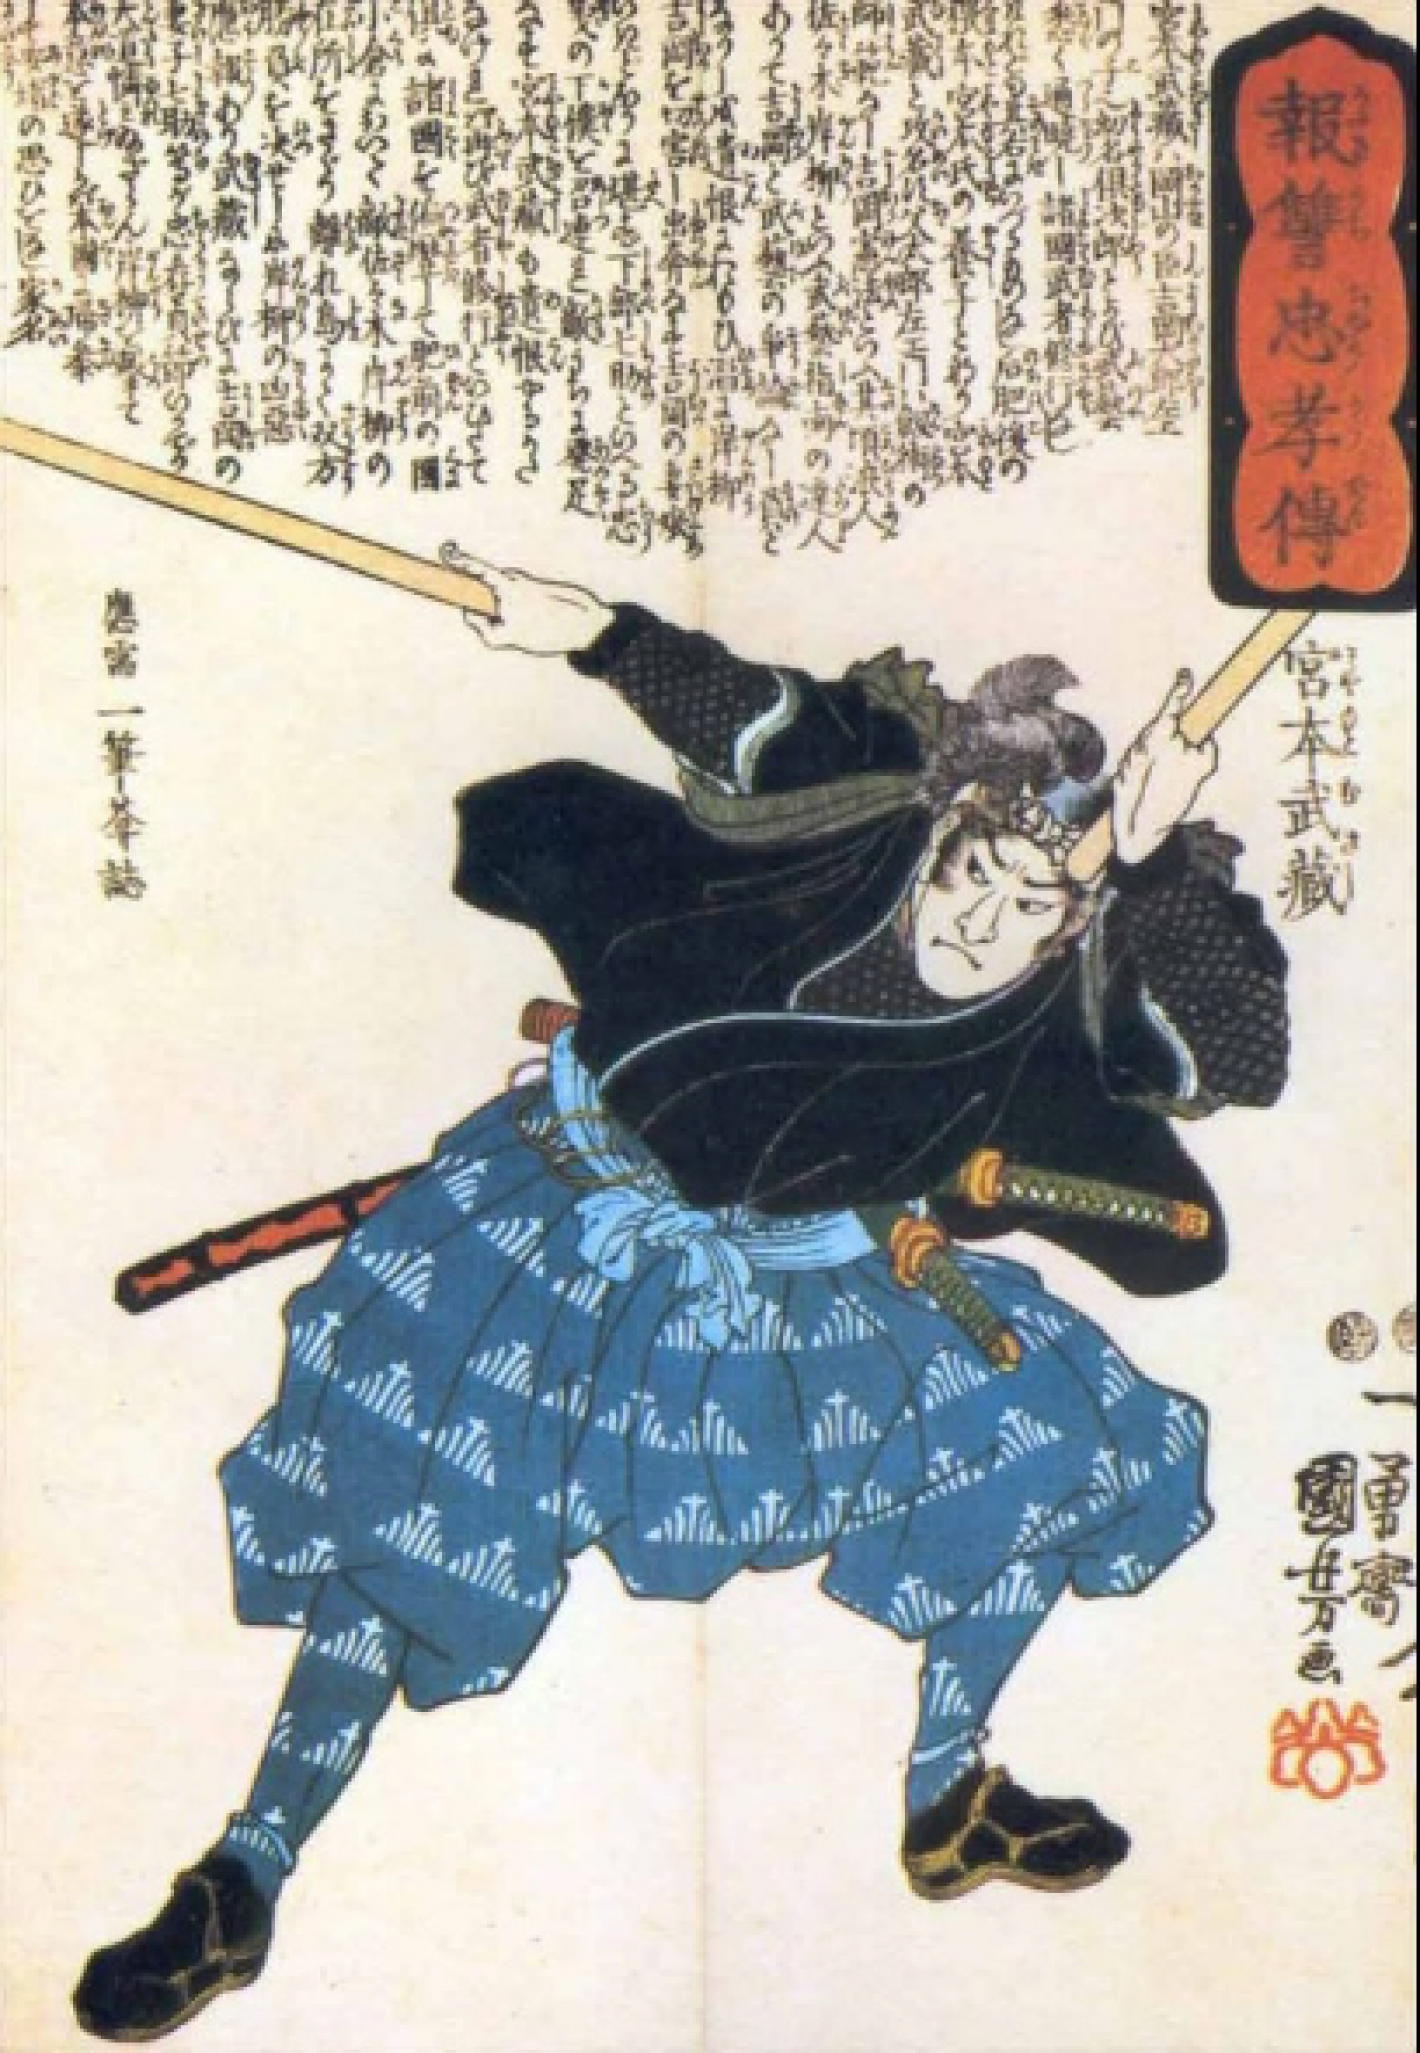 images/liguria/IMG_COMUNI/large/medium/samurai.png